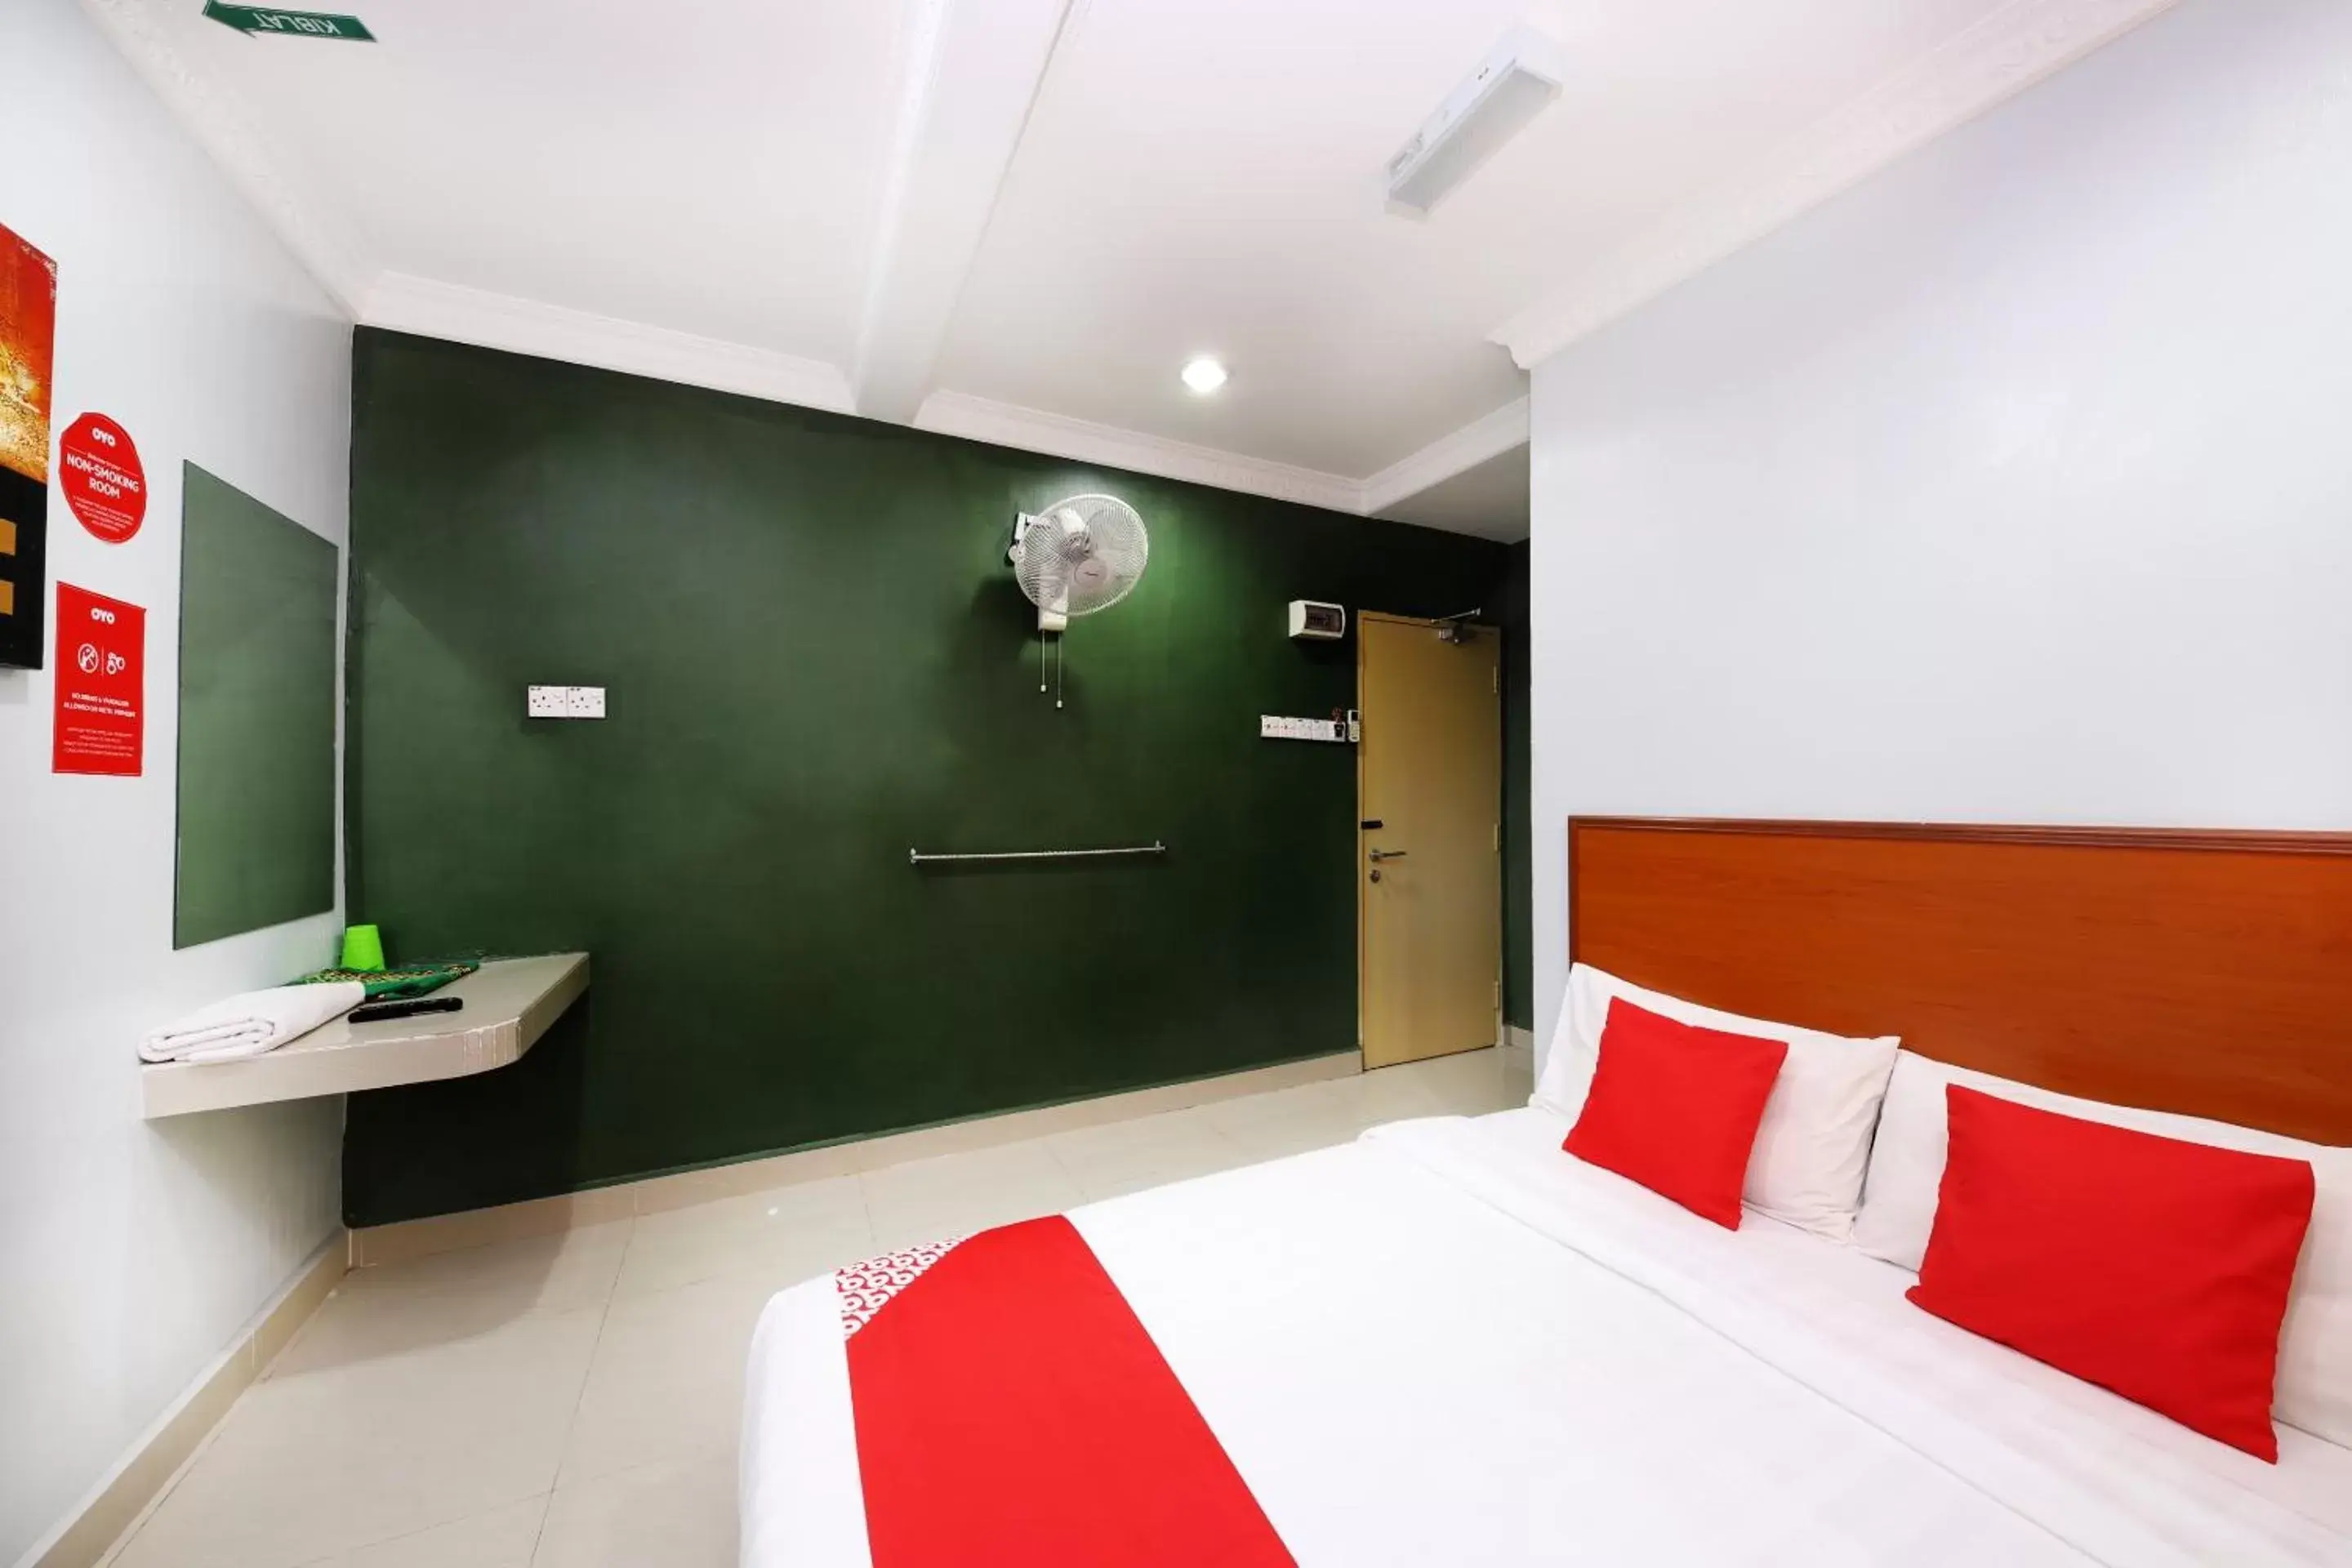 Bedroom, Bathroom in OYO 720 Corridor Hotel 2